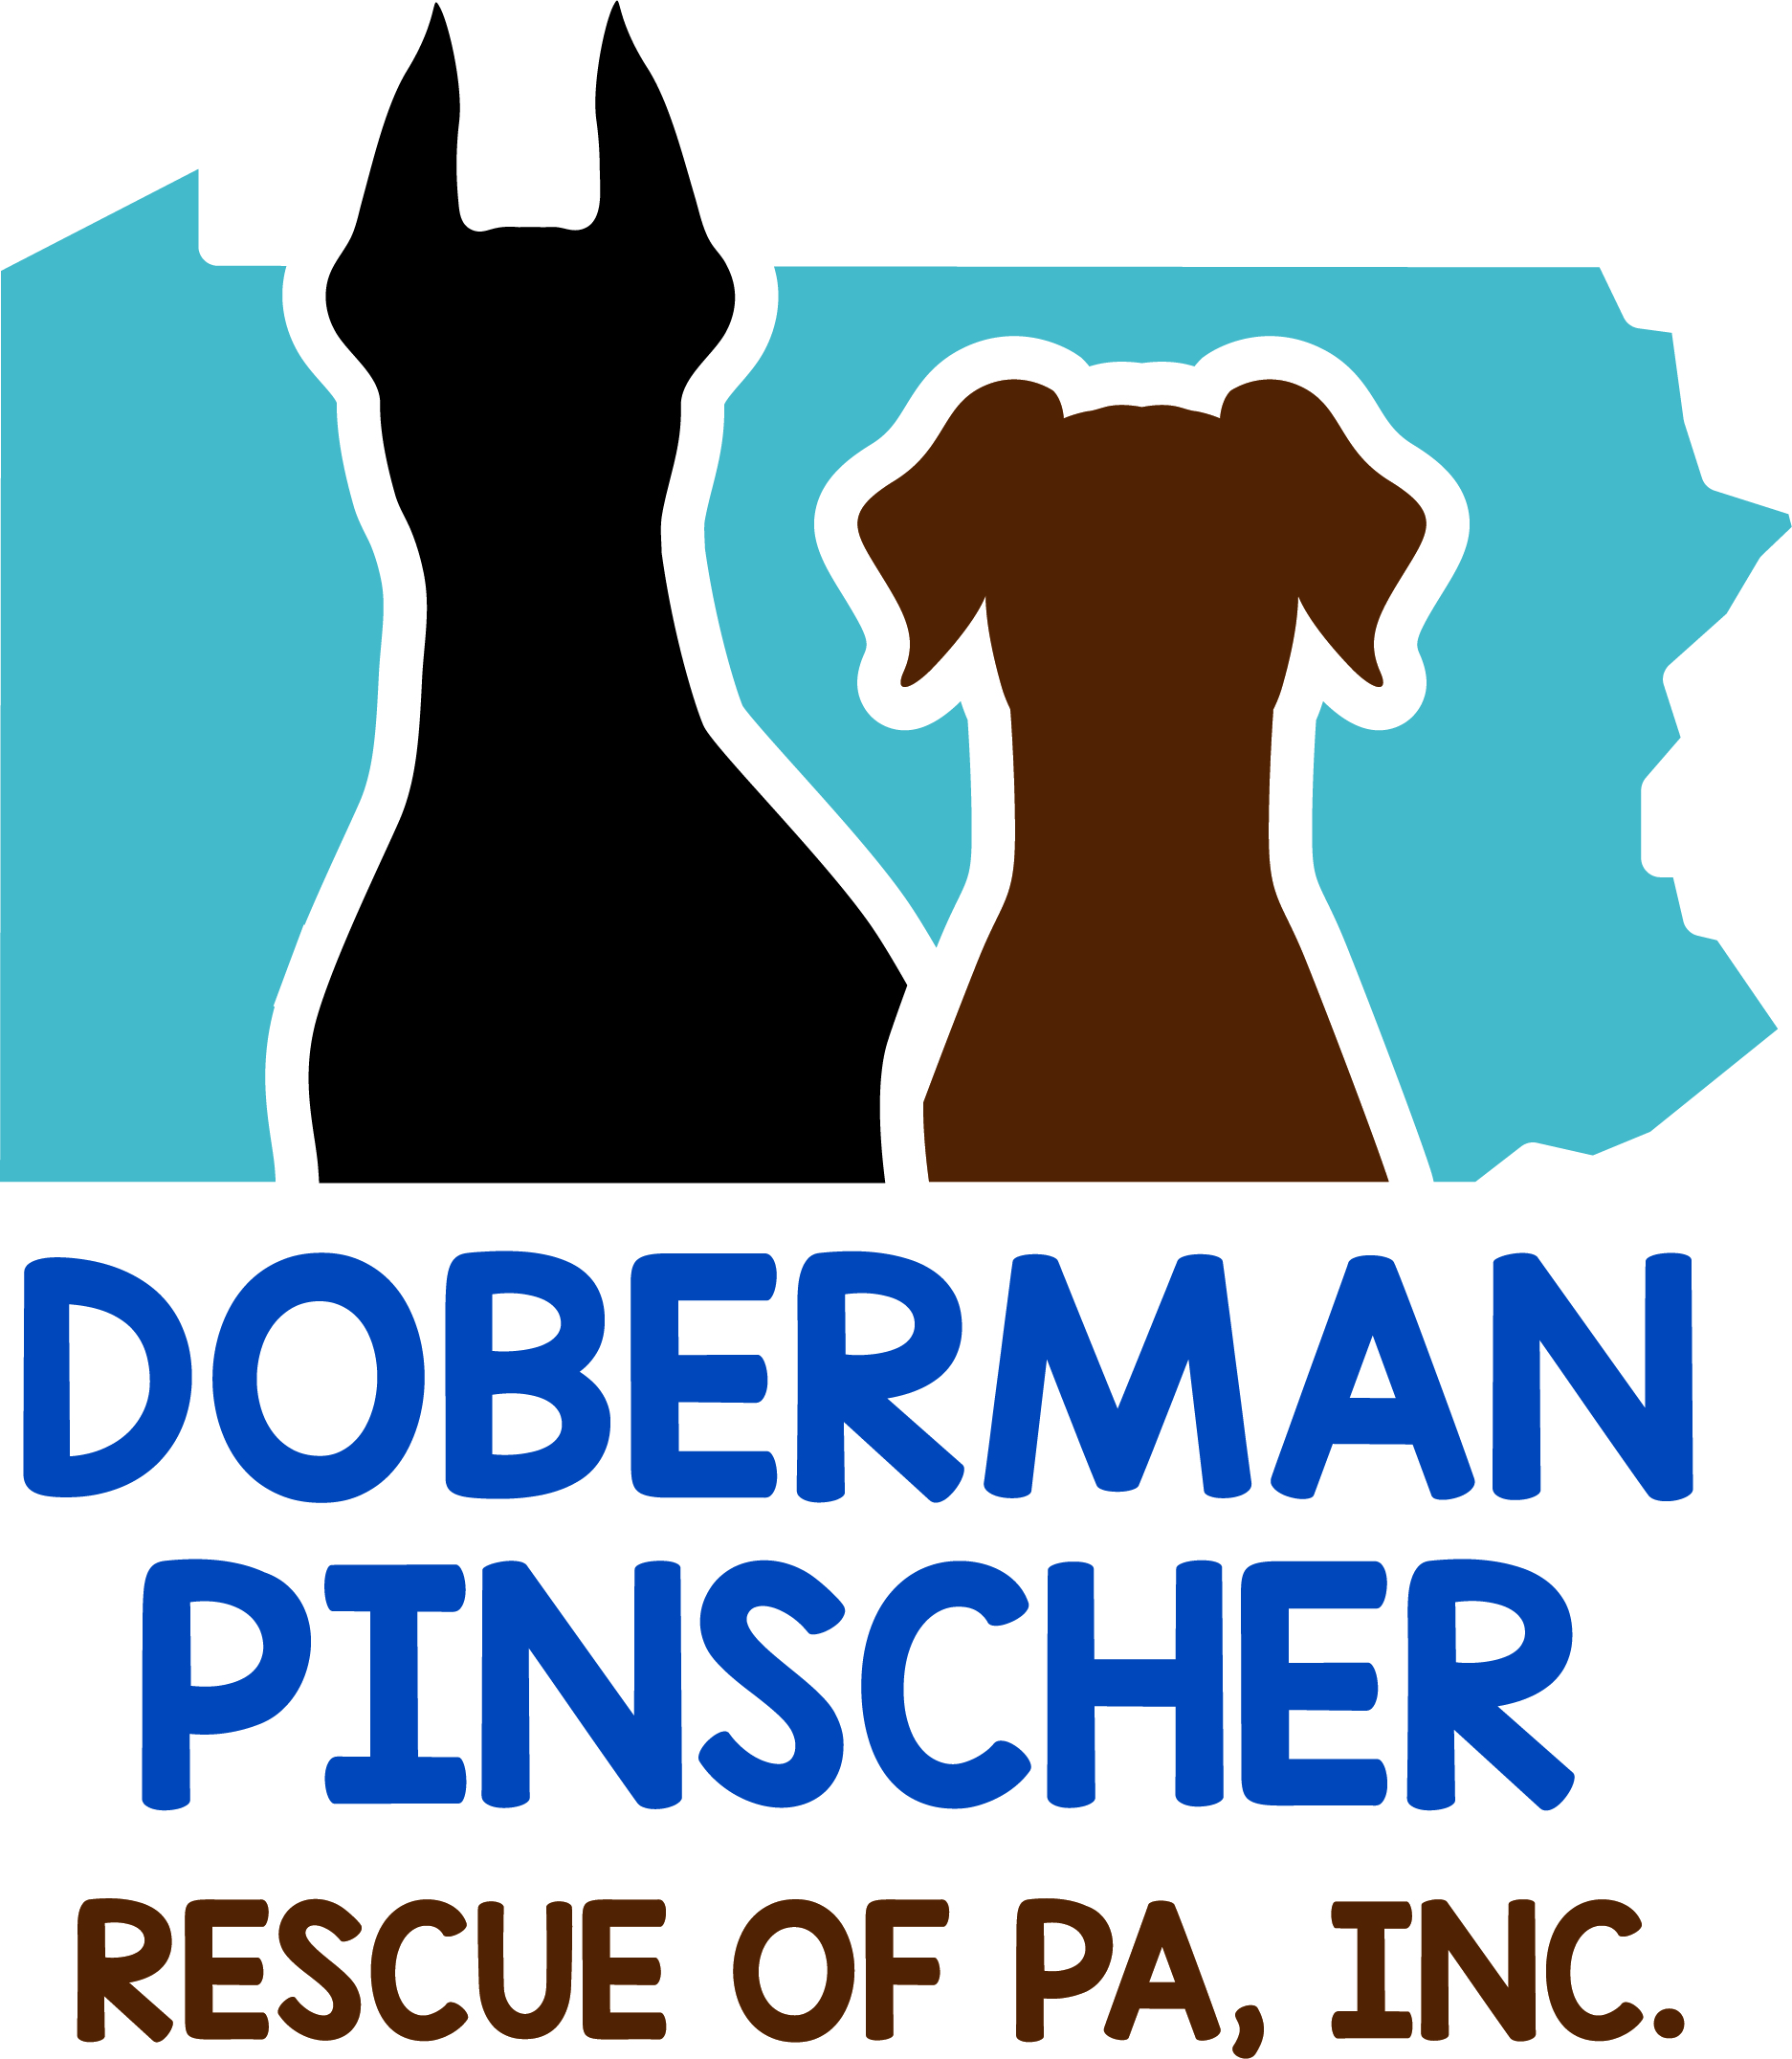 Doberman Pinscher Rescue of PA, Inc.